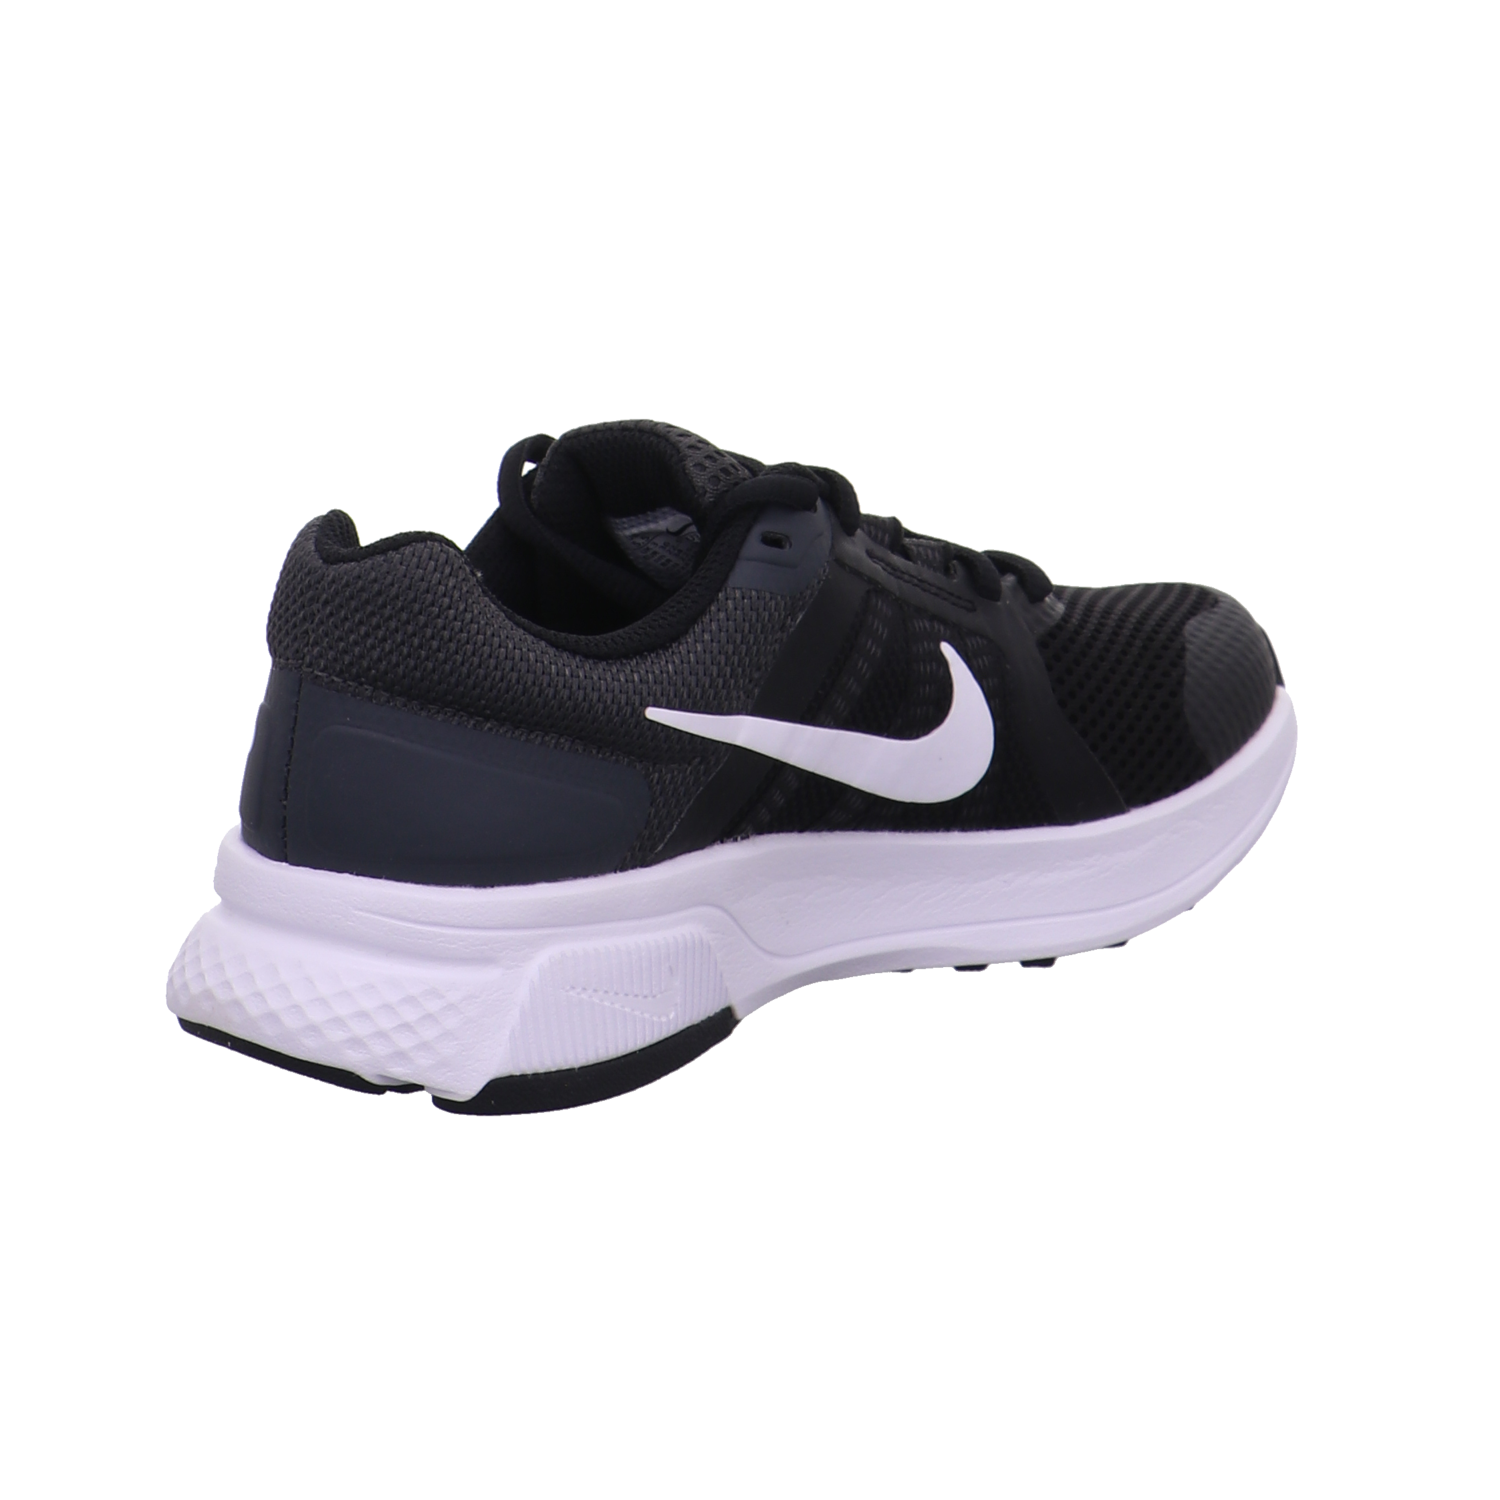 Nike Training und Hallenschuhe schwarz-weiß Bild5